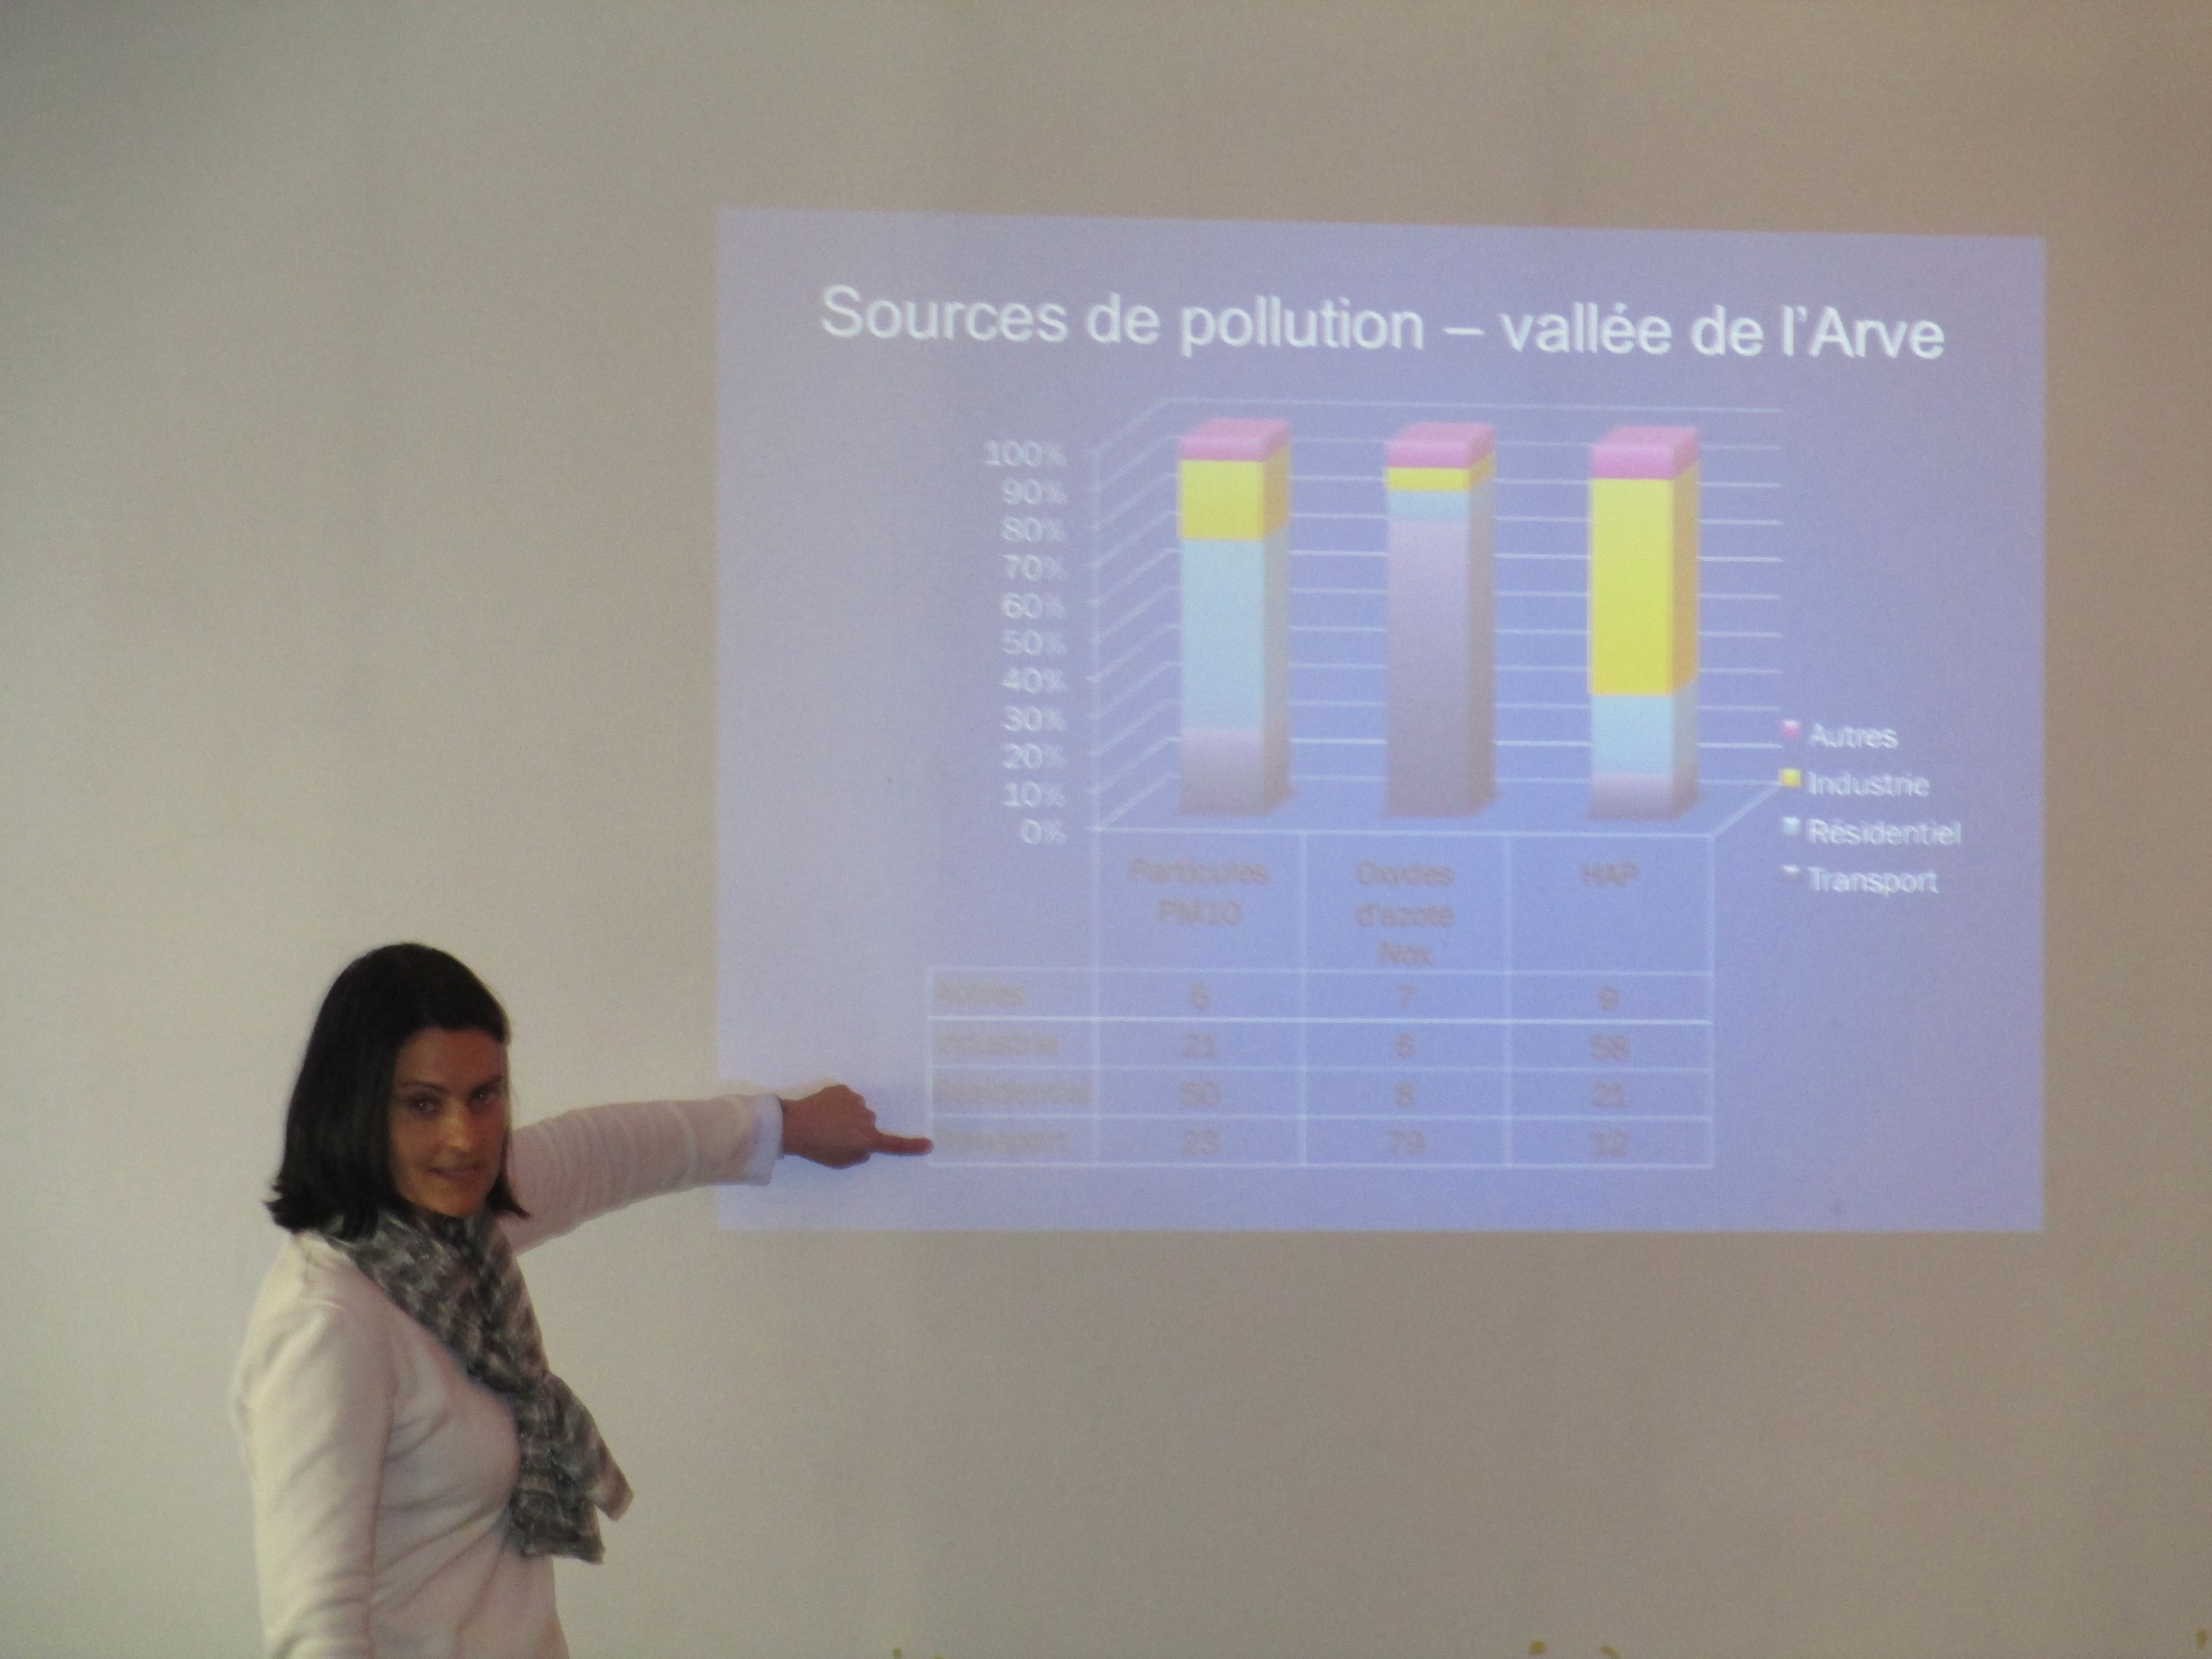 7 février 2013, présentation du PPA de la vallée de l'Arve, Lyon